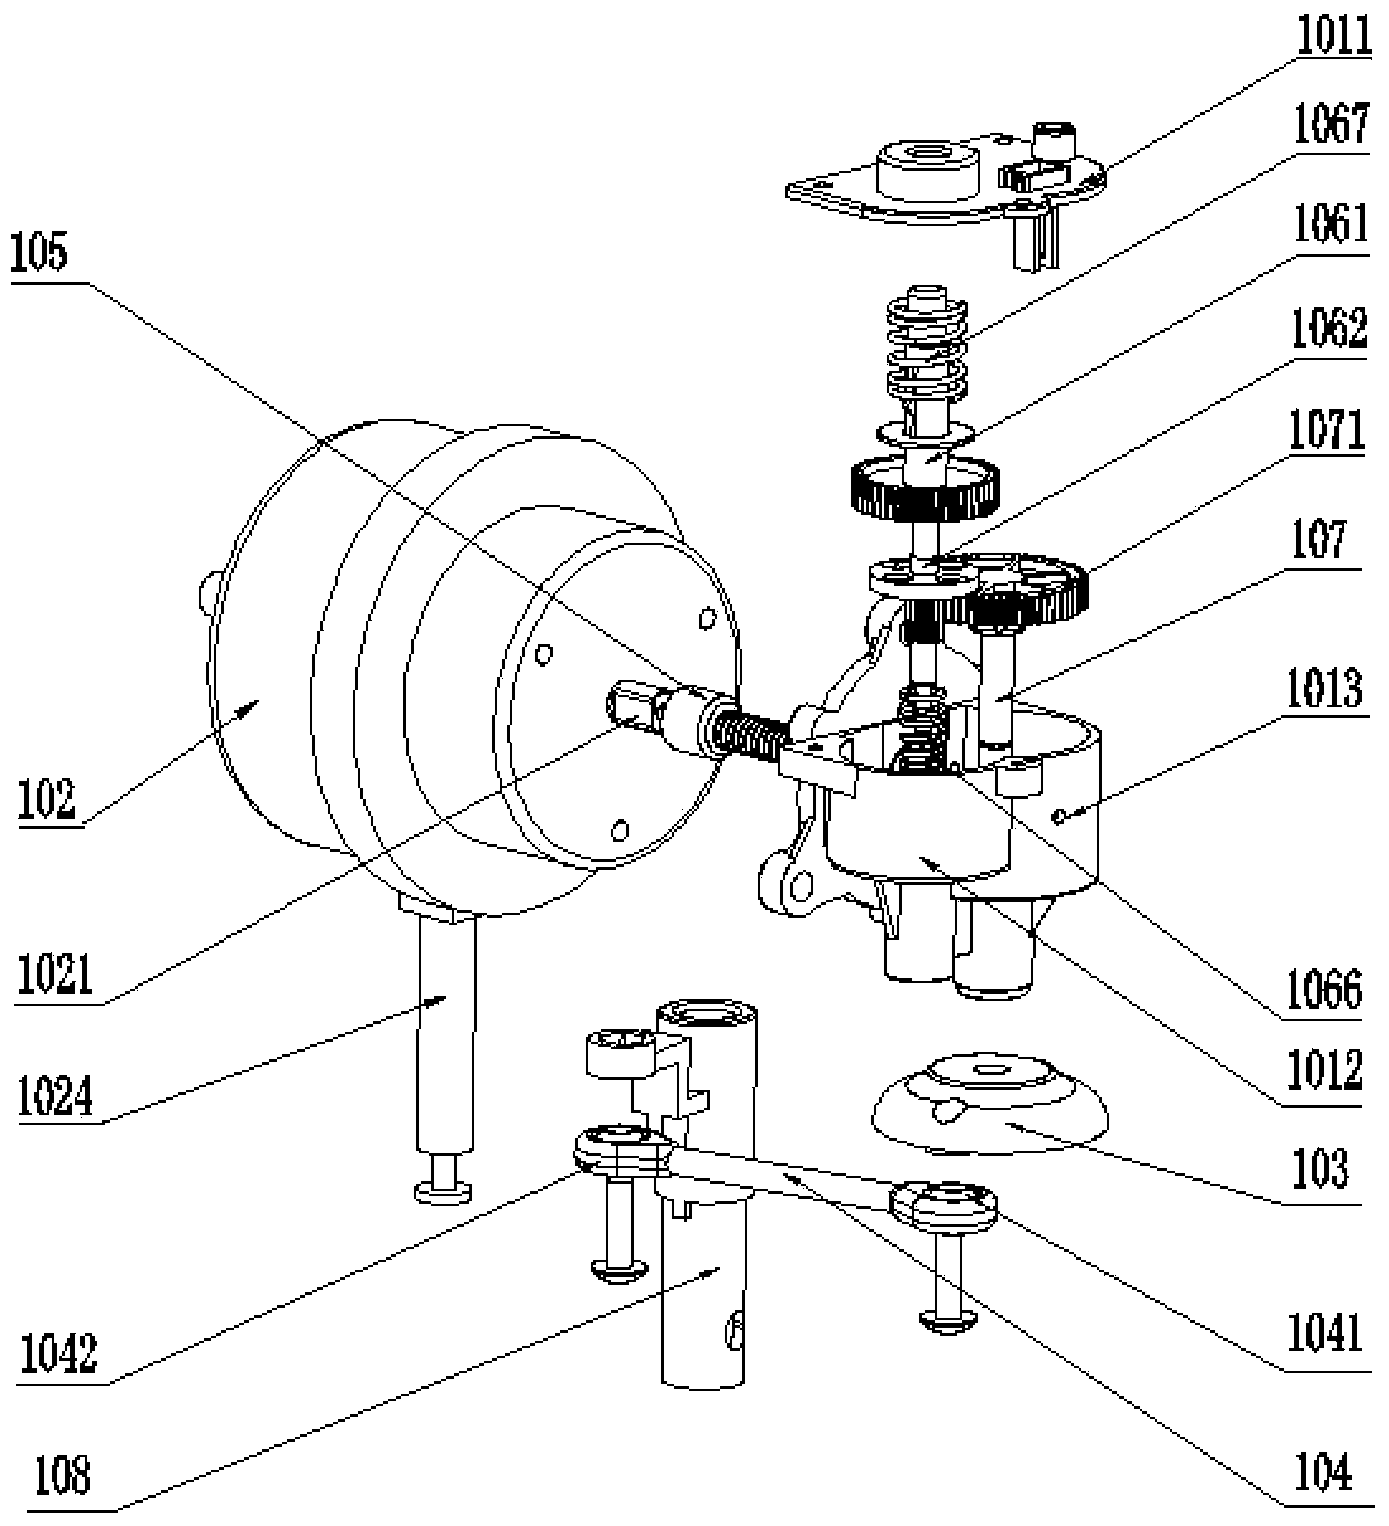 Fan oscillating mechanism and fan with fan oscillating mechanism